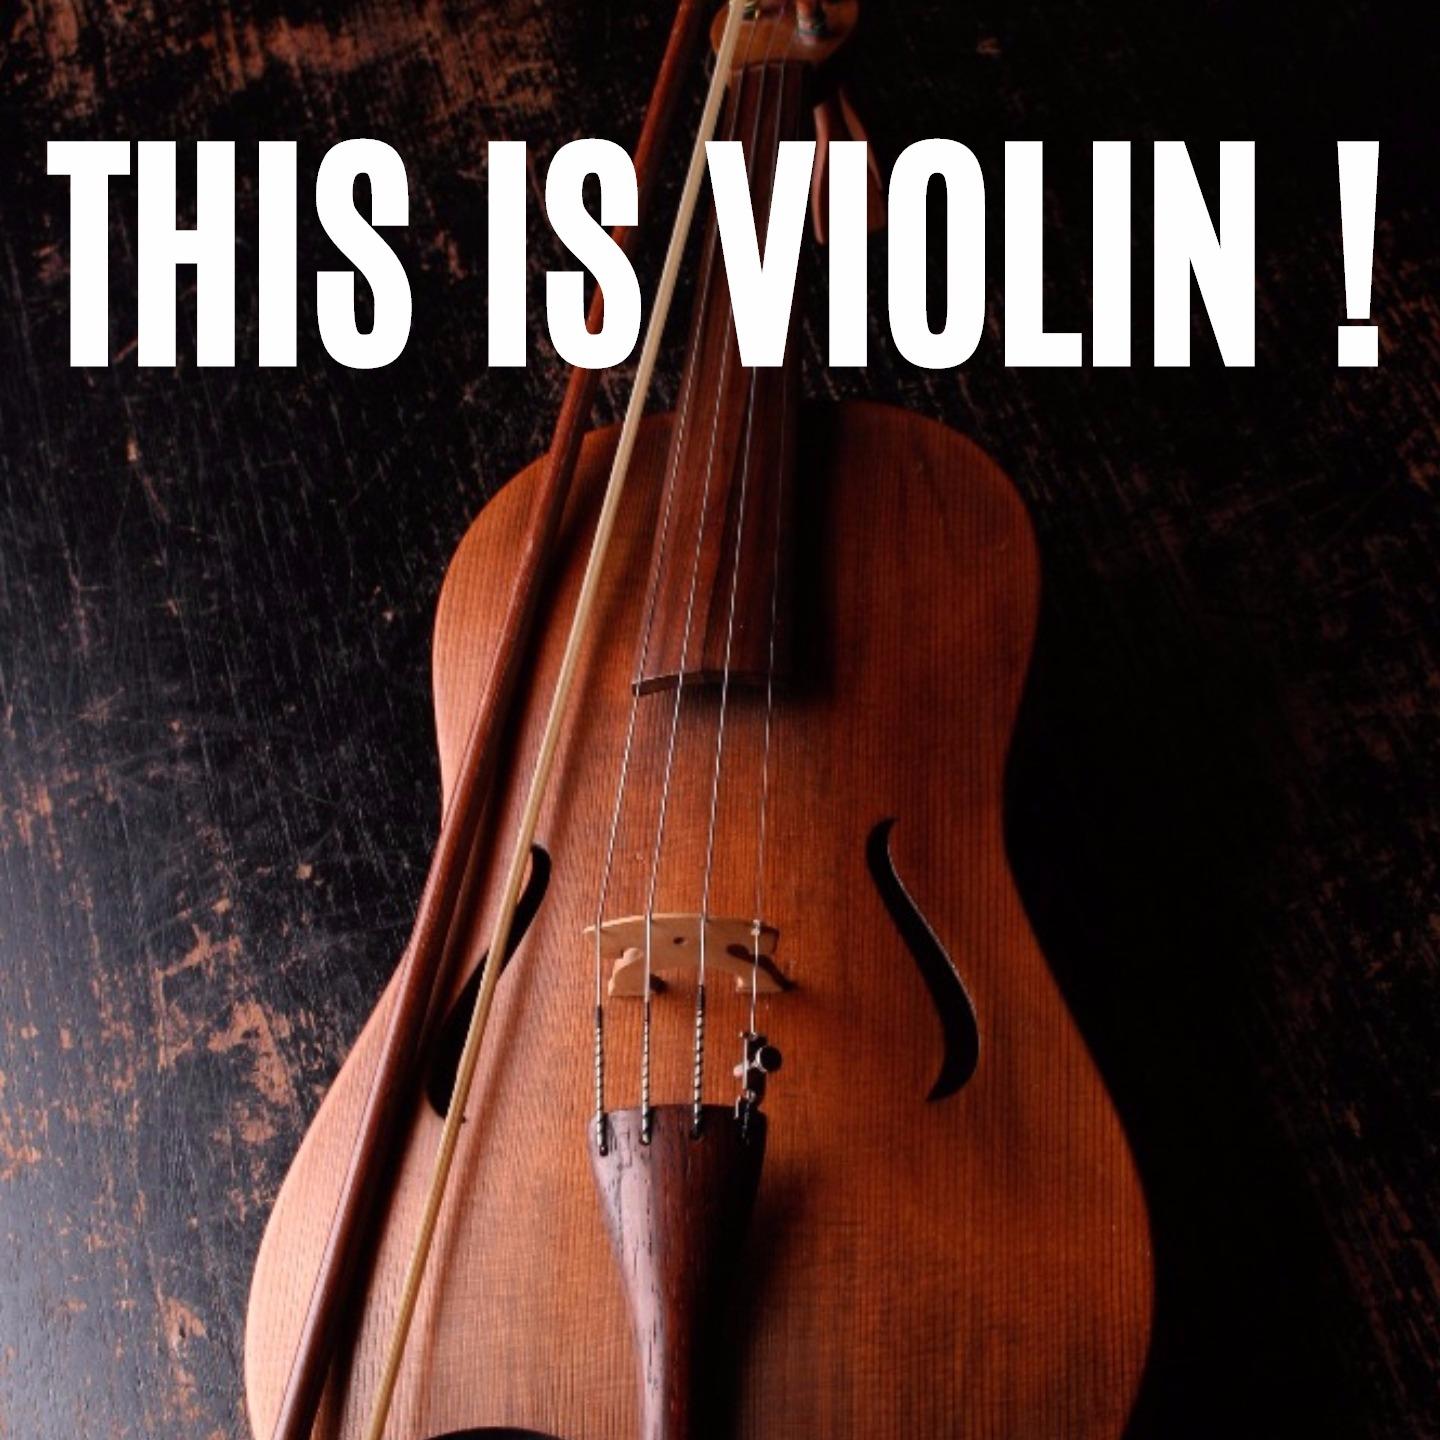 Sonata for Violin and Continuo in F Major, Op. 5 No. 1, RV 18: IV. Allegro